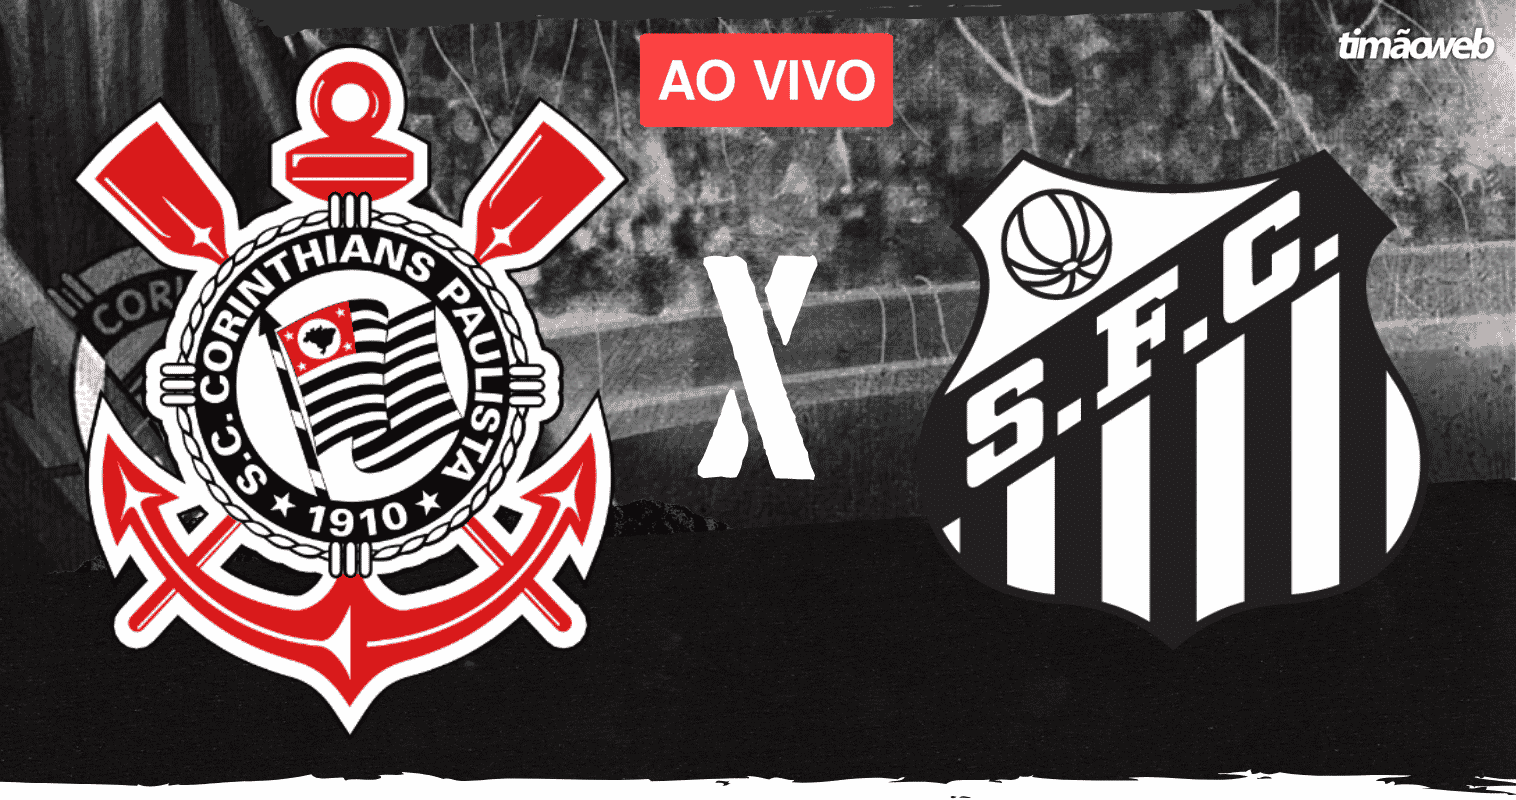 Onde assistir ao vivo o jogo Corinthians x Santos hoje, quarta